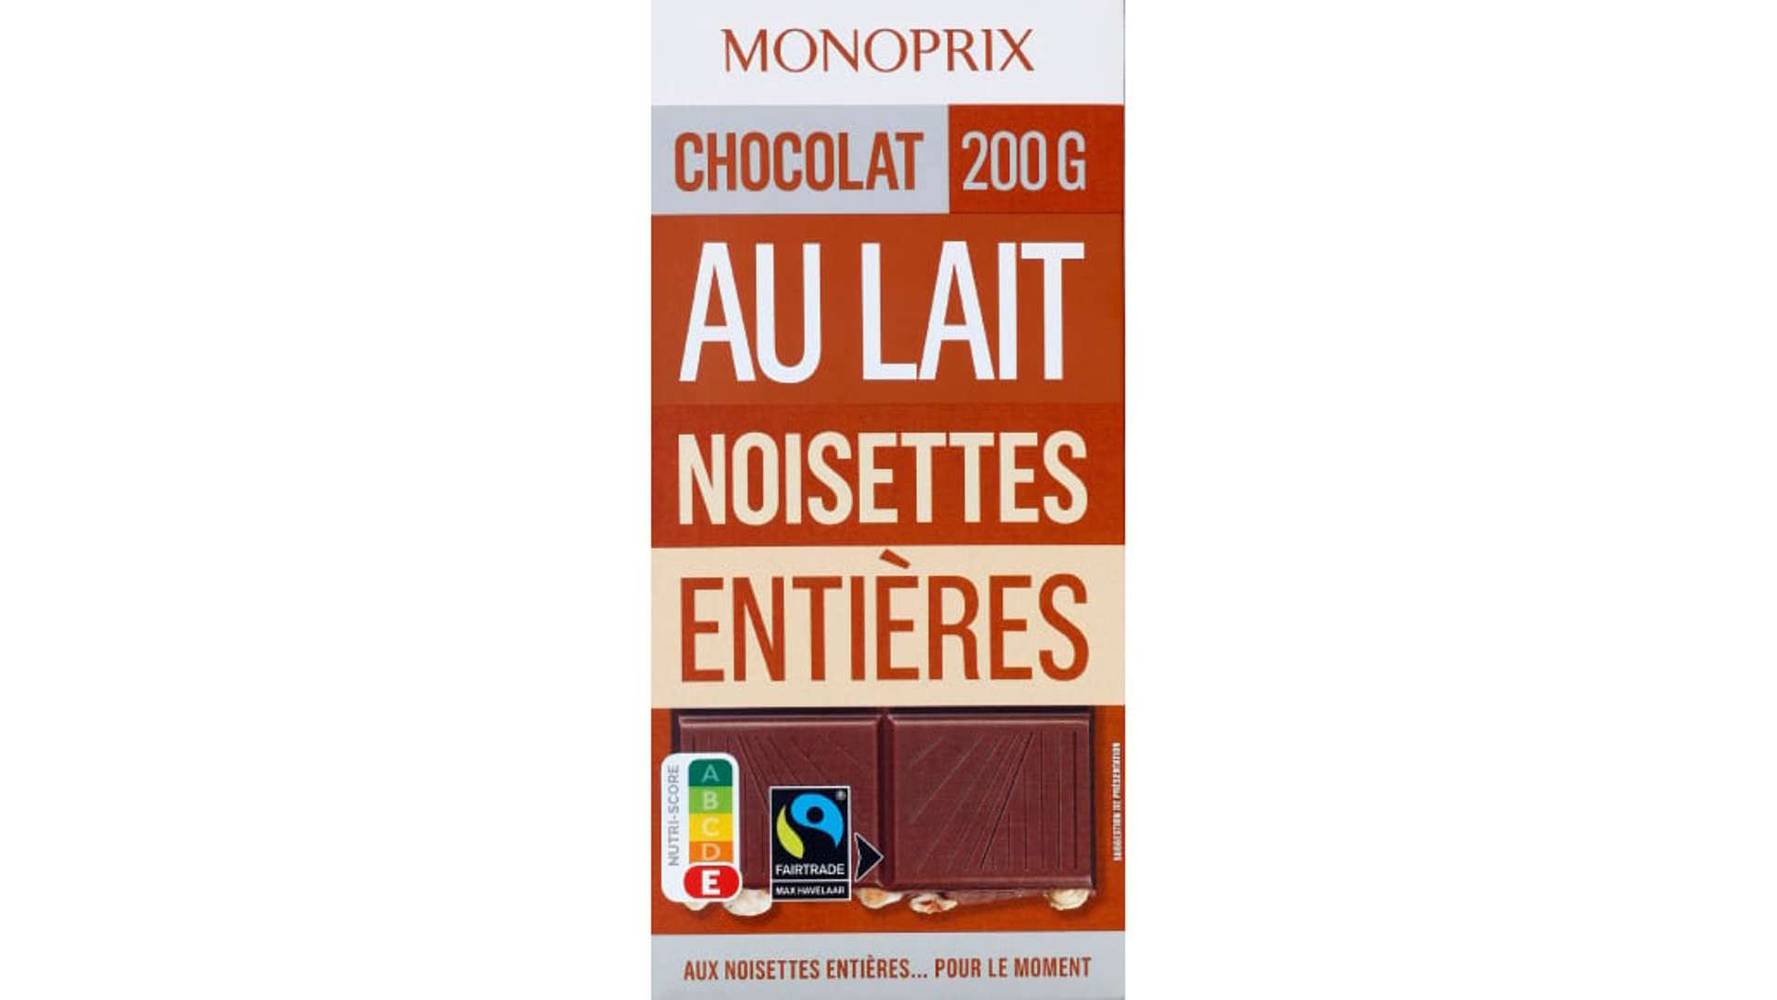 Monoprix Chocolat au lait aux noisettes entières, Max Havelaar La tablette de 200g